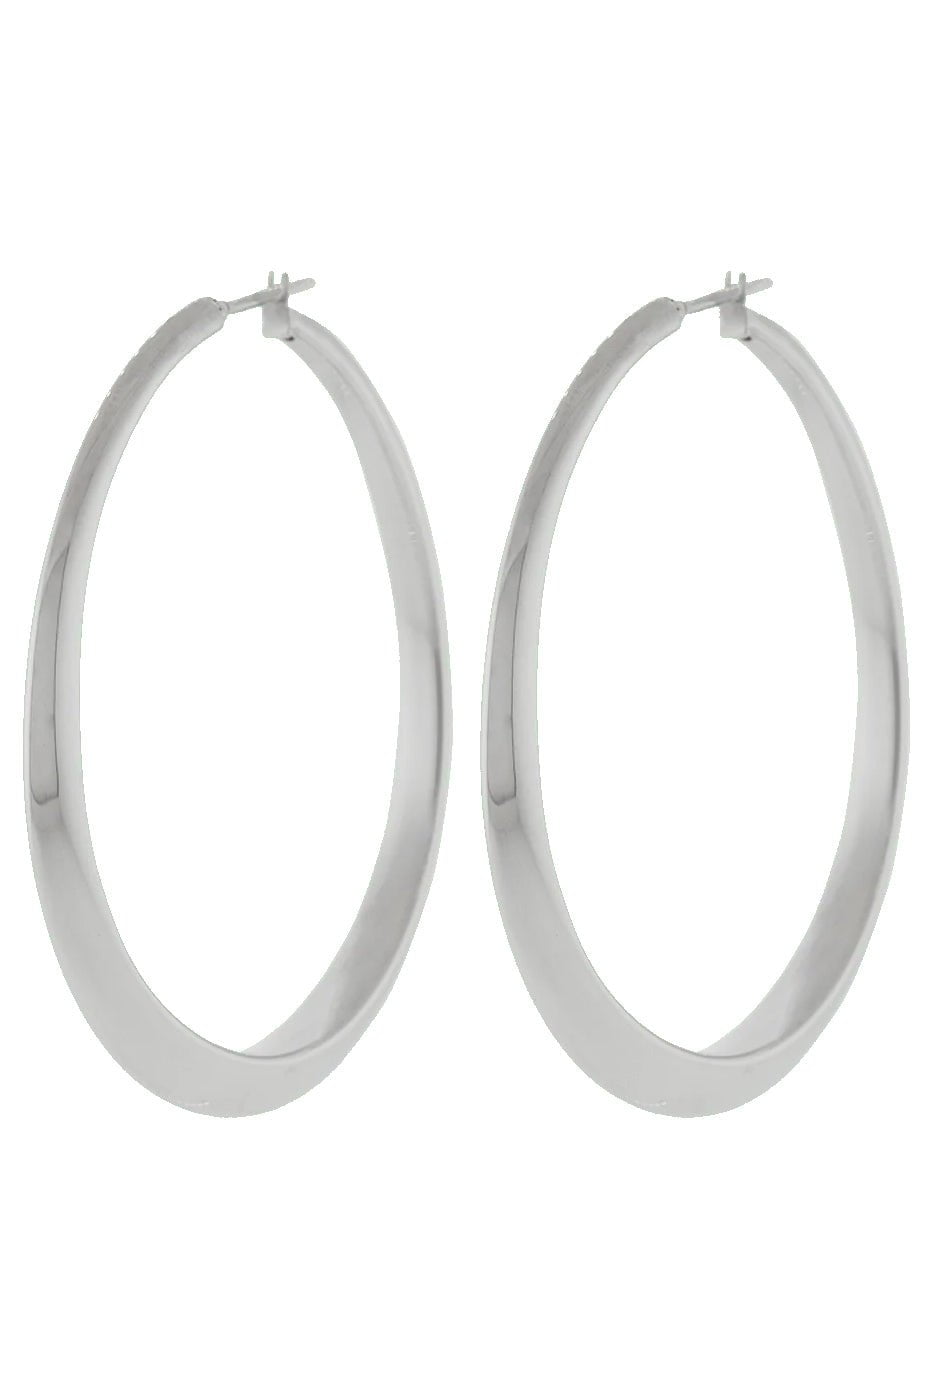 SIDNEY GARBER-Oval Hoop Earrings-WHITE GOLD